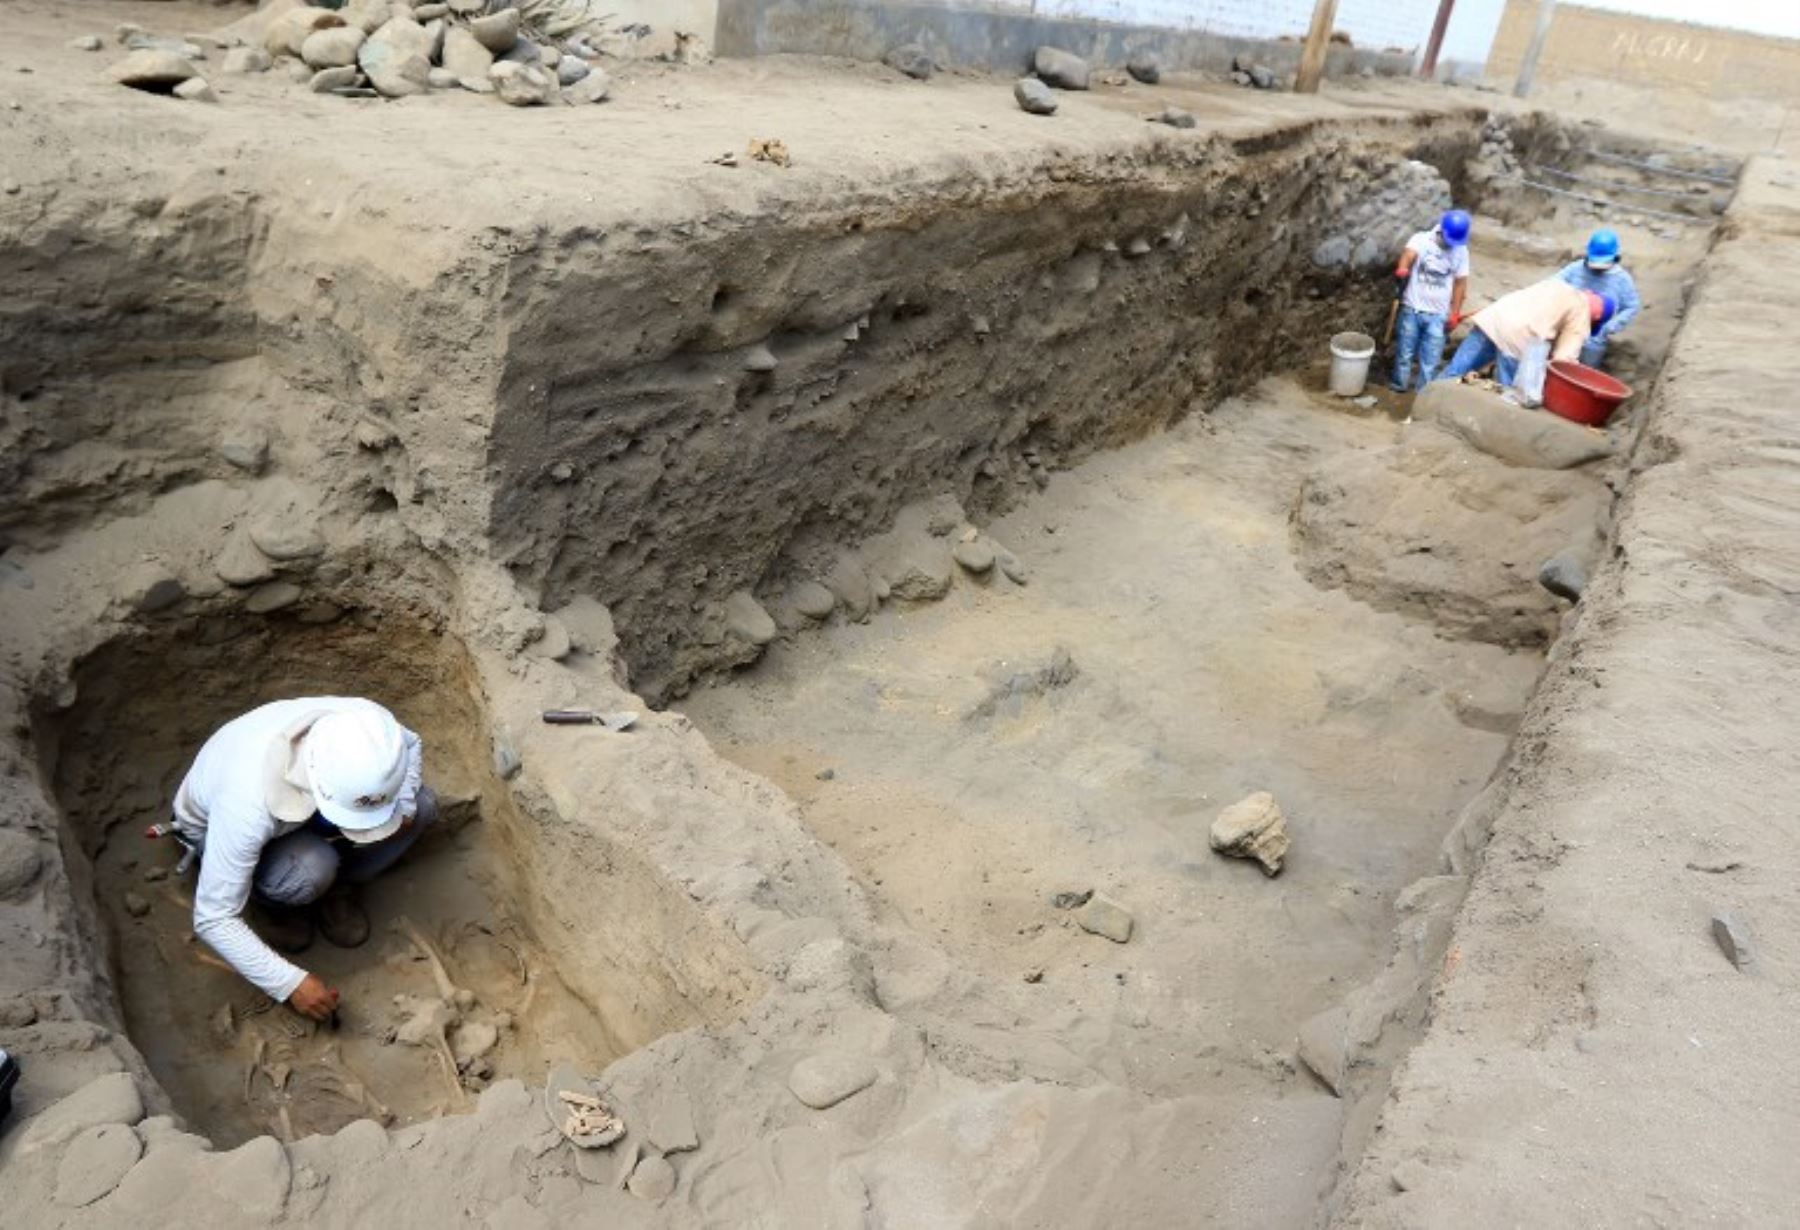 Un arqueólogo trabaja en un sitio de excavación donde se encontraron restos humanos que datan de más de 1,500 años, en el pueblo costero norteño de Huanchaco.Foto:AFP